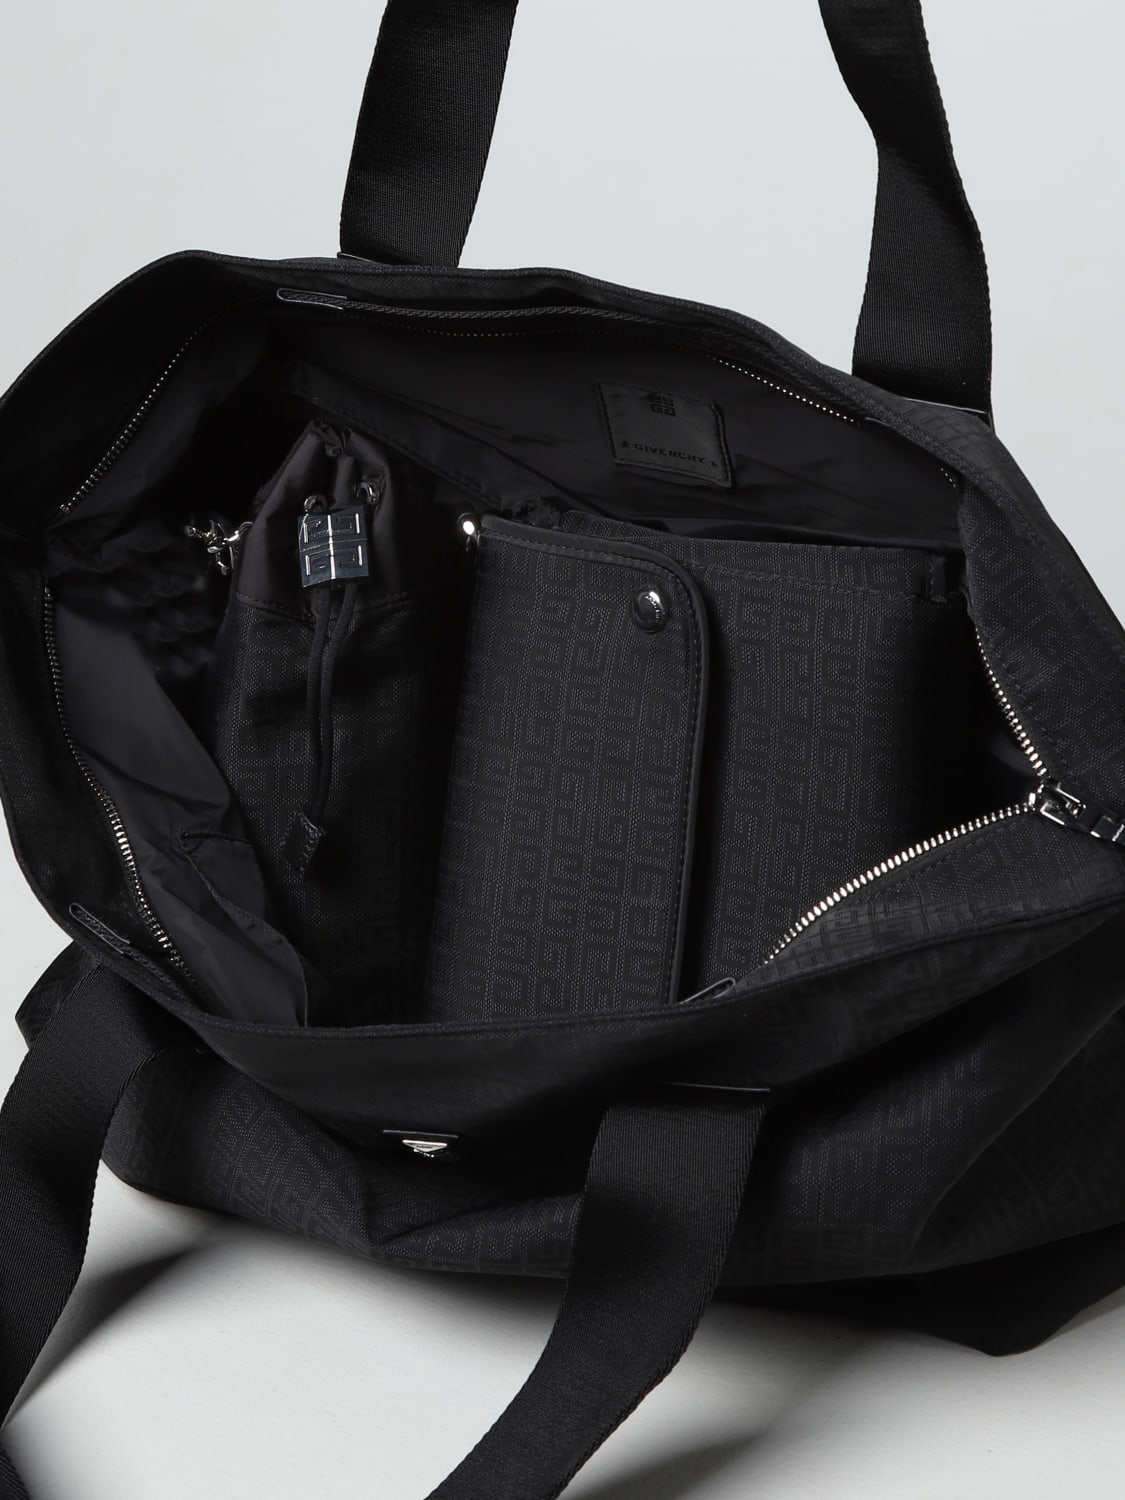 Stella McCartney Black Logo Baby Changing Bag | Junior Couture UK